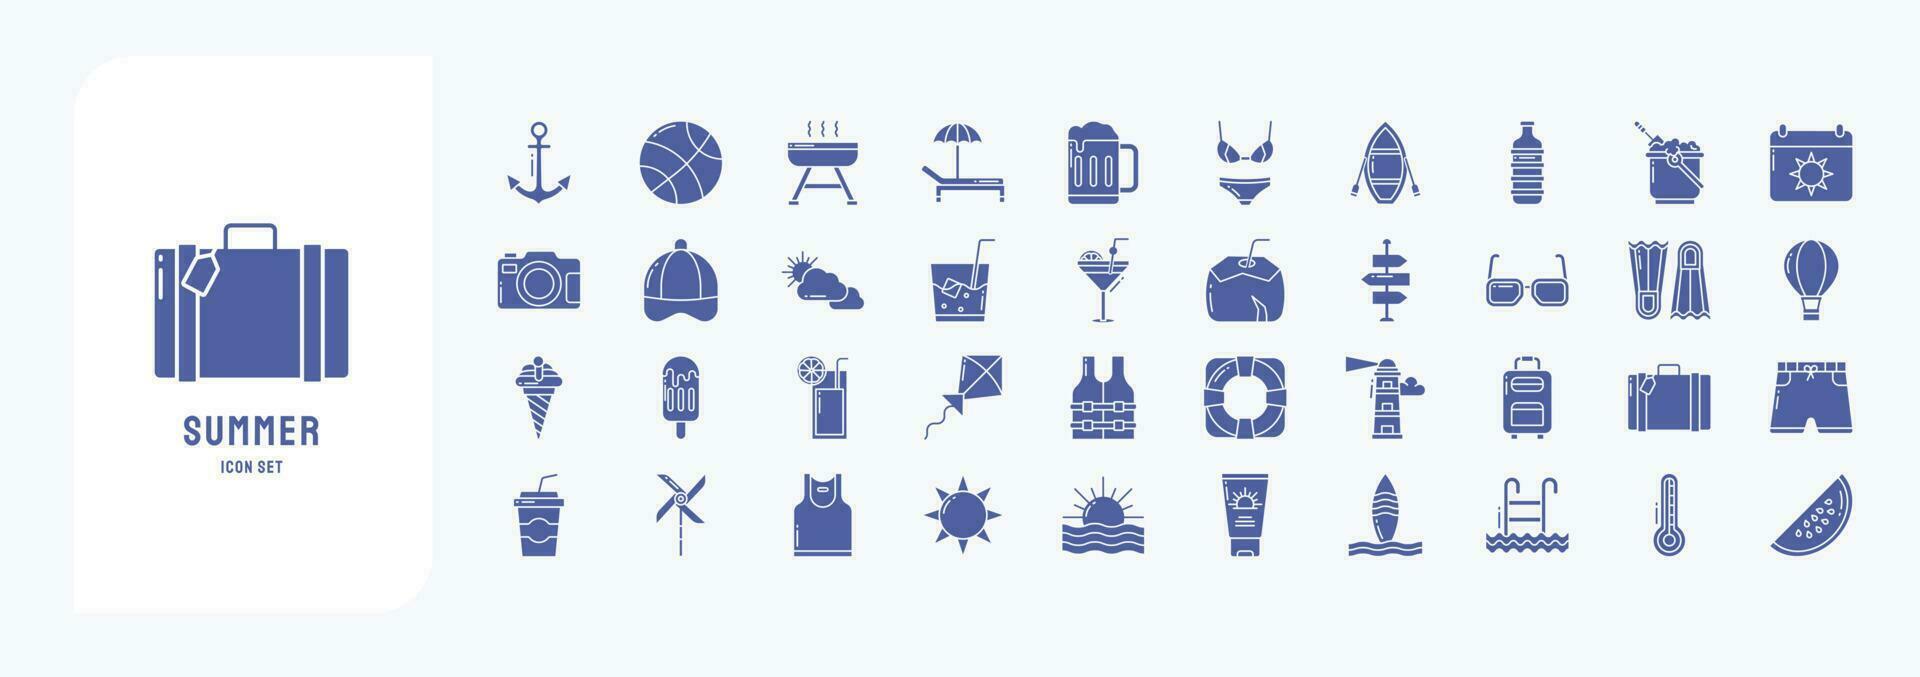 verzameling van pictogrammen verwant naar zomer en vakantie, inclusief pictogrammen Leuk vinden anker, bal, barbecue, strand stoel en meer vector